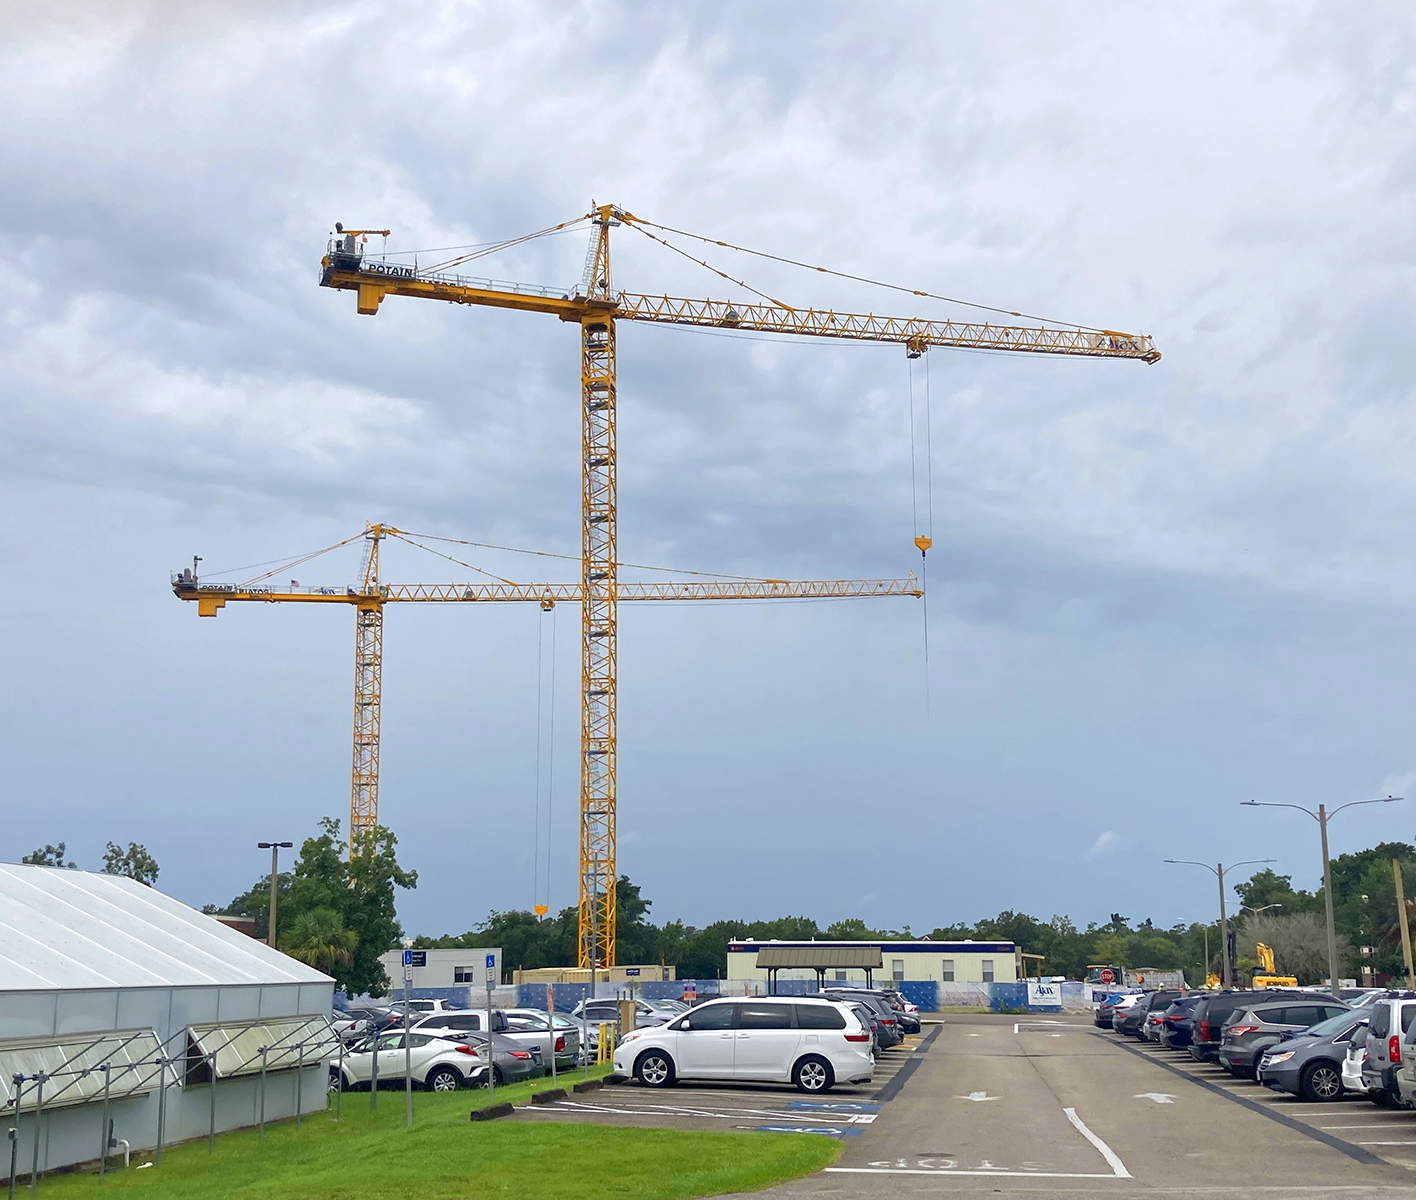 how do tower cranes grow